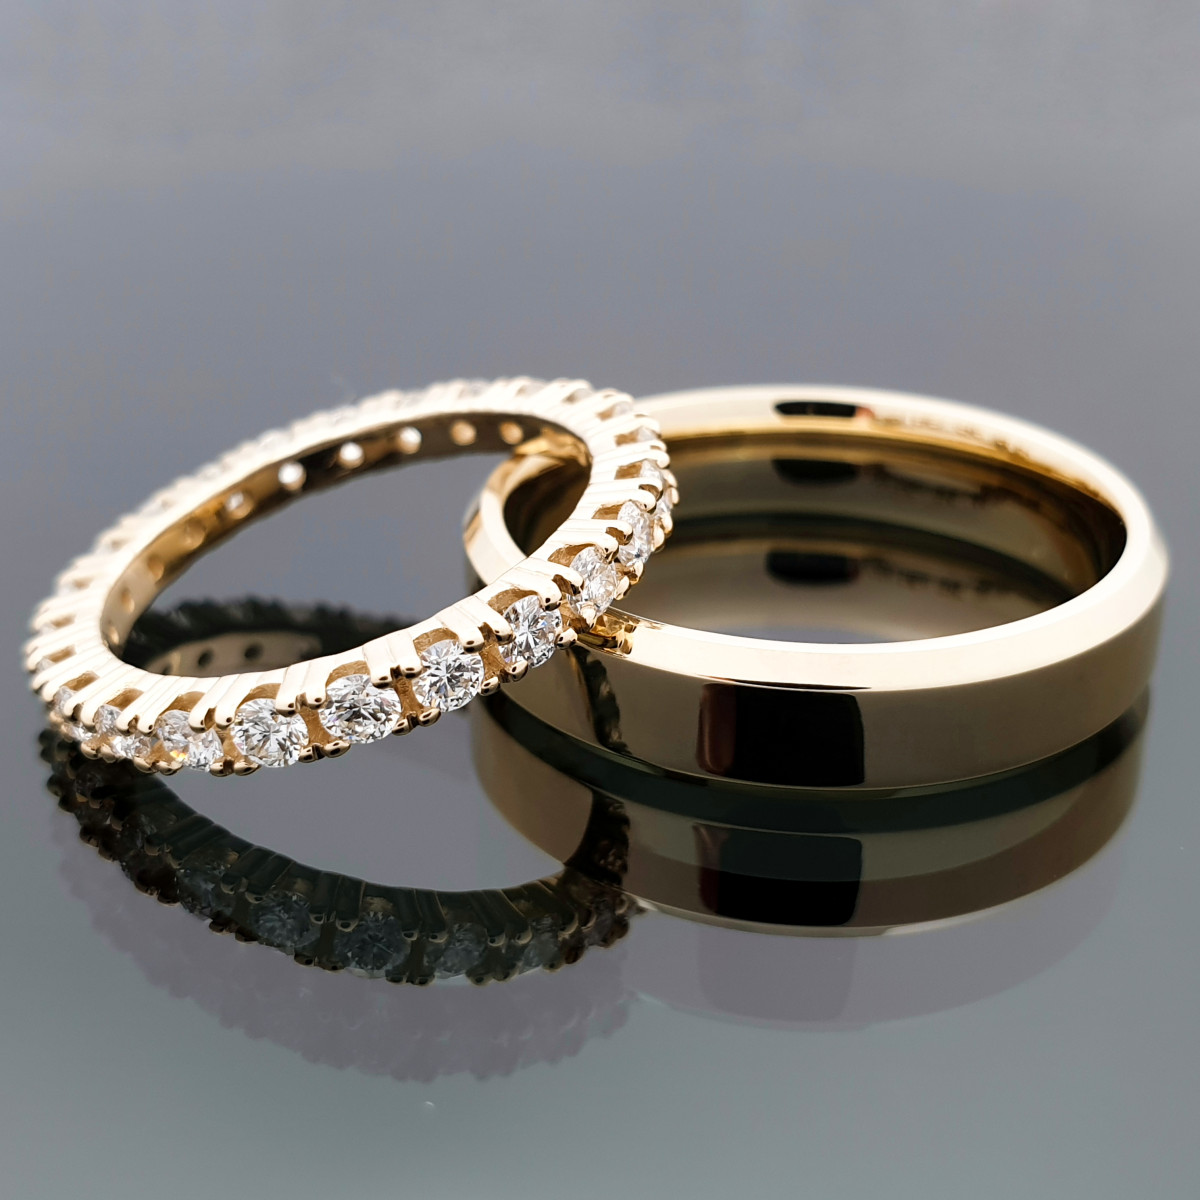 Vestuviniai žiedai su briliantų juostele (vz98)